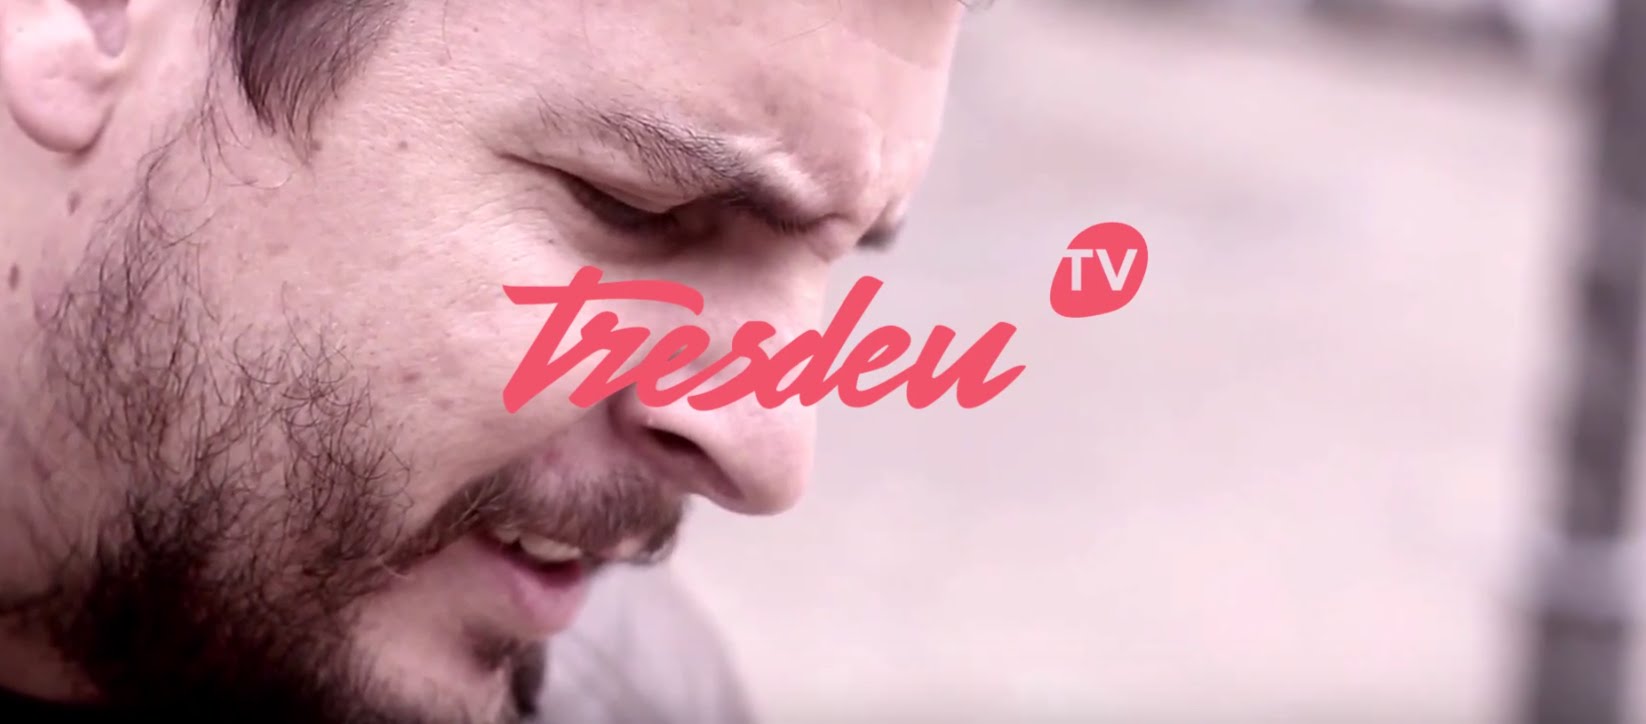 Top10 febrer 2016 - TresdeuTV de Dannides